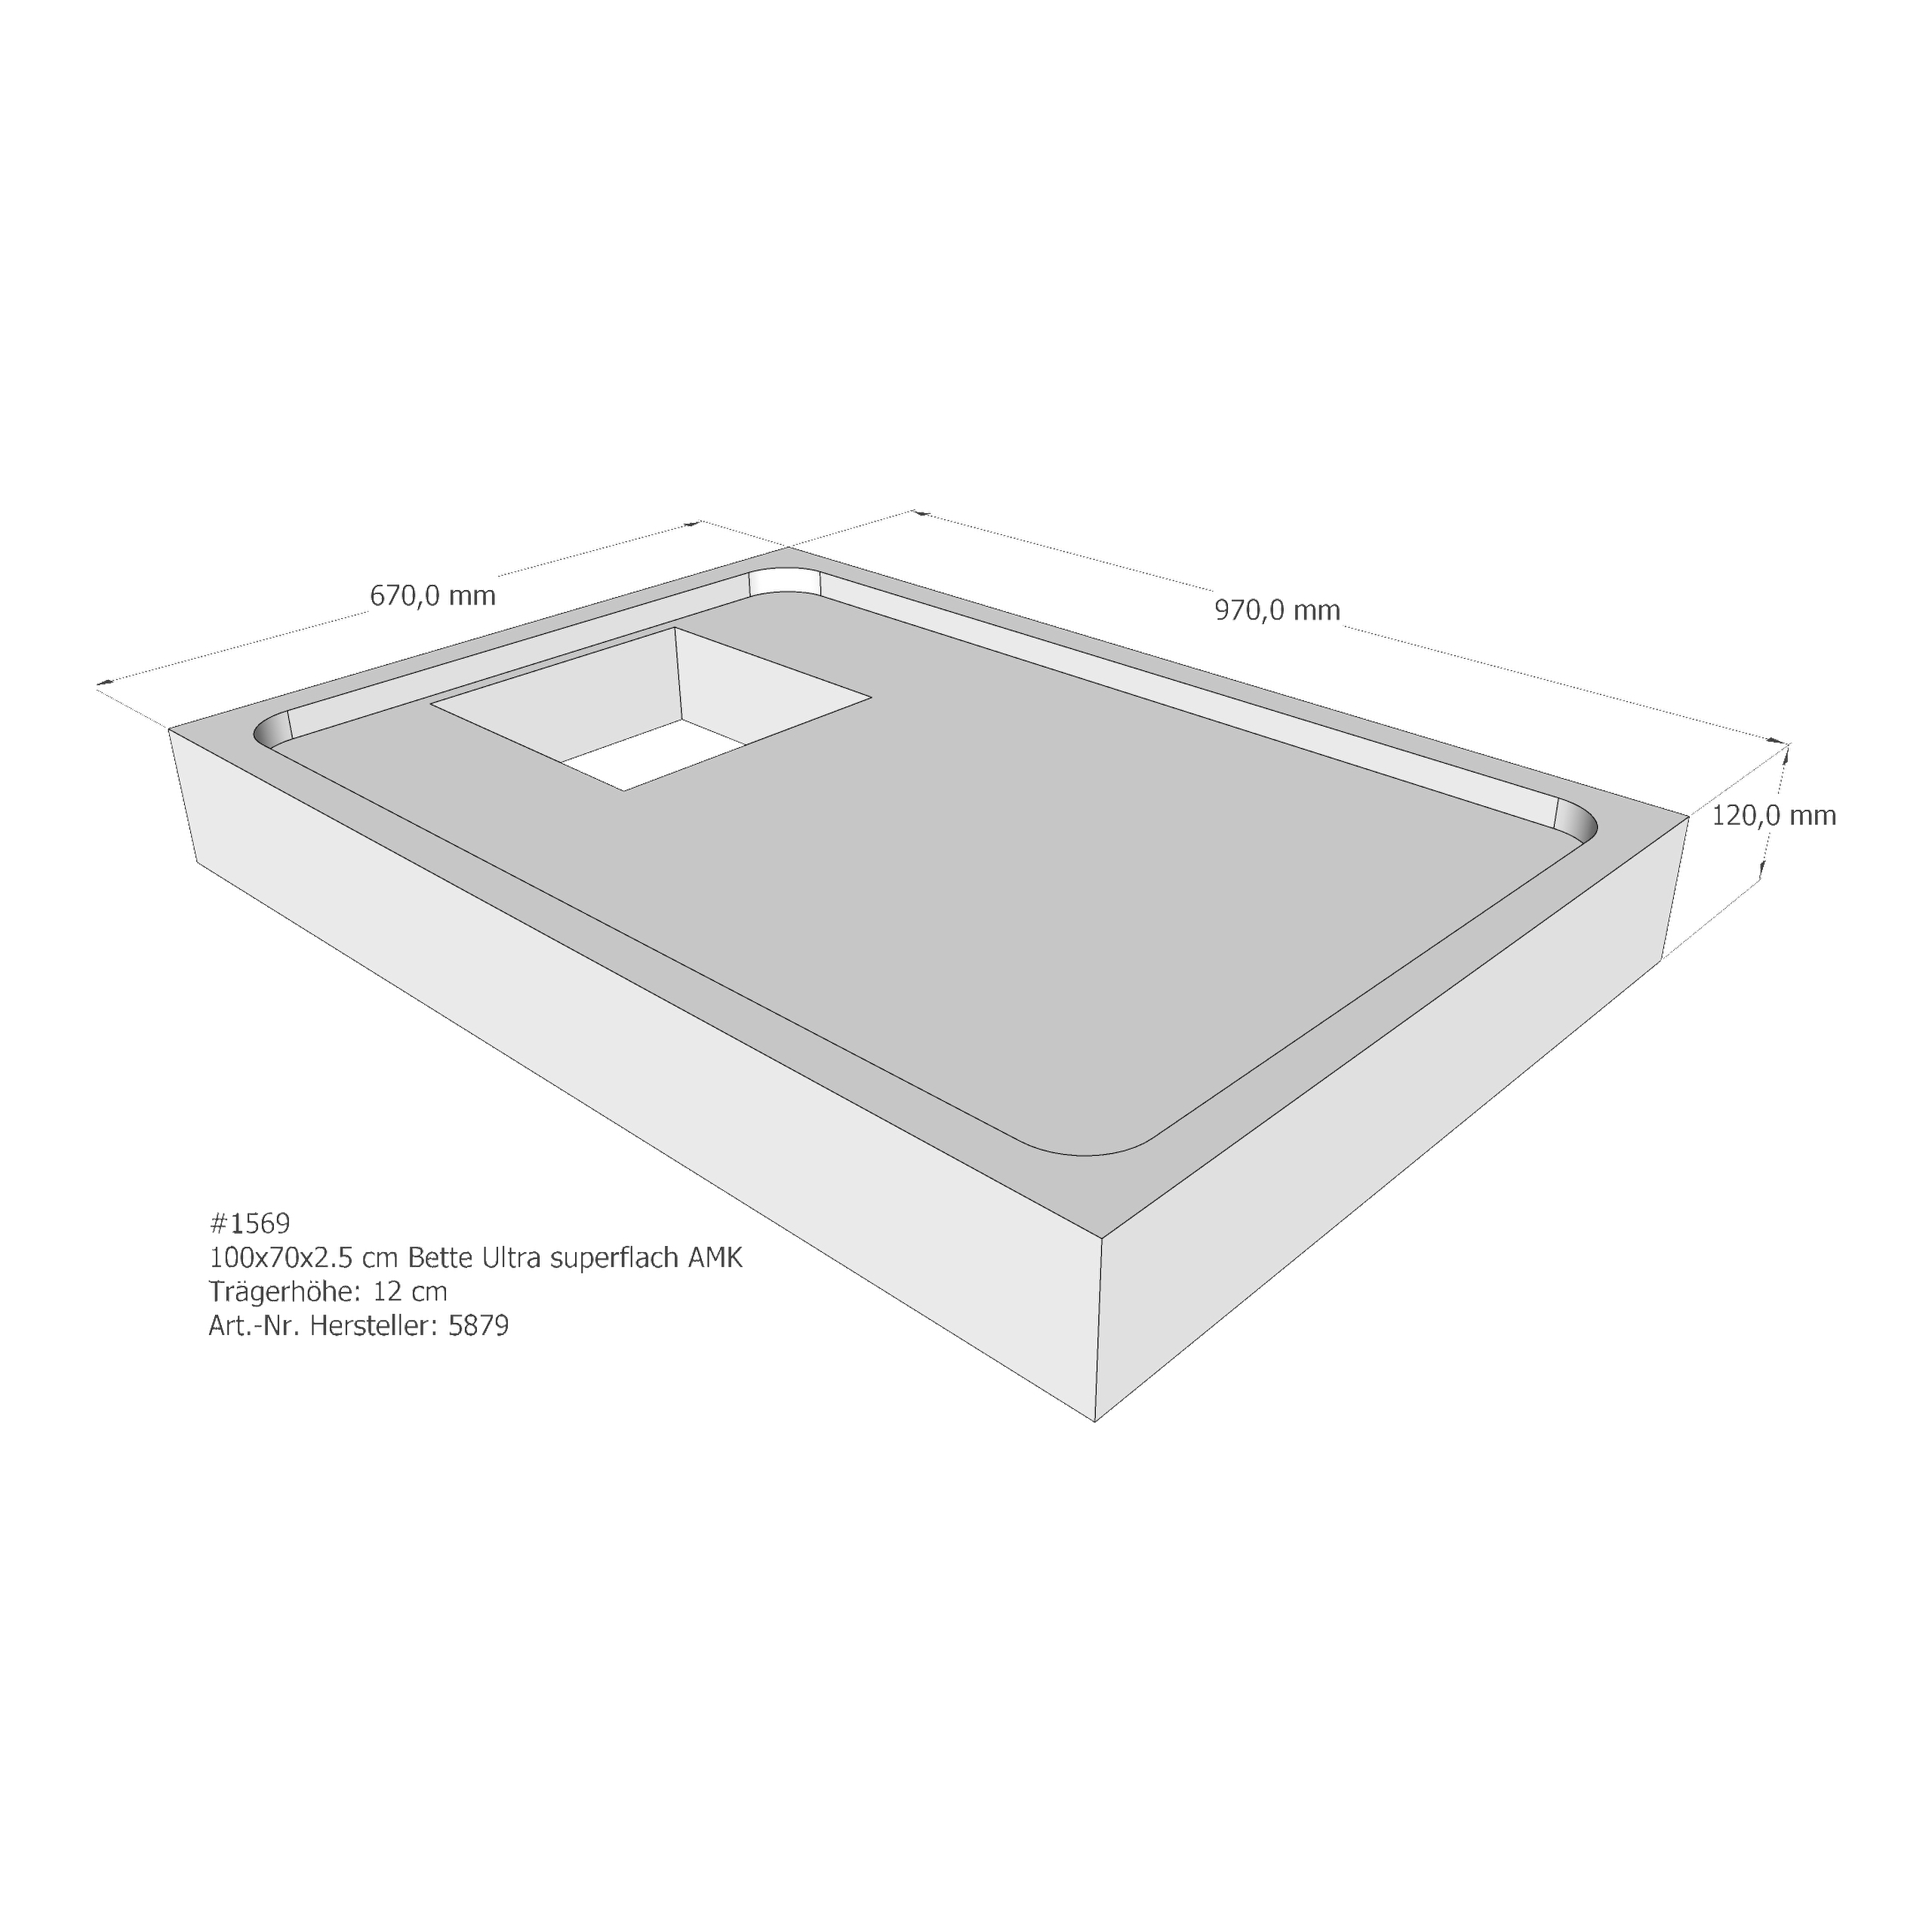 Duschwannenträger Bette BetteUltra (superflach) 100x70x2,5 cm AMK210